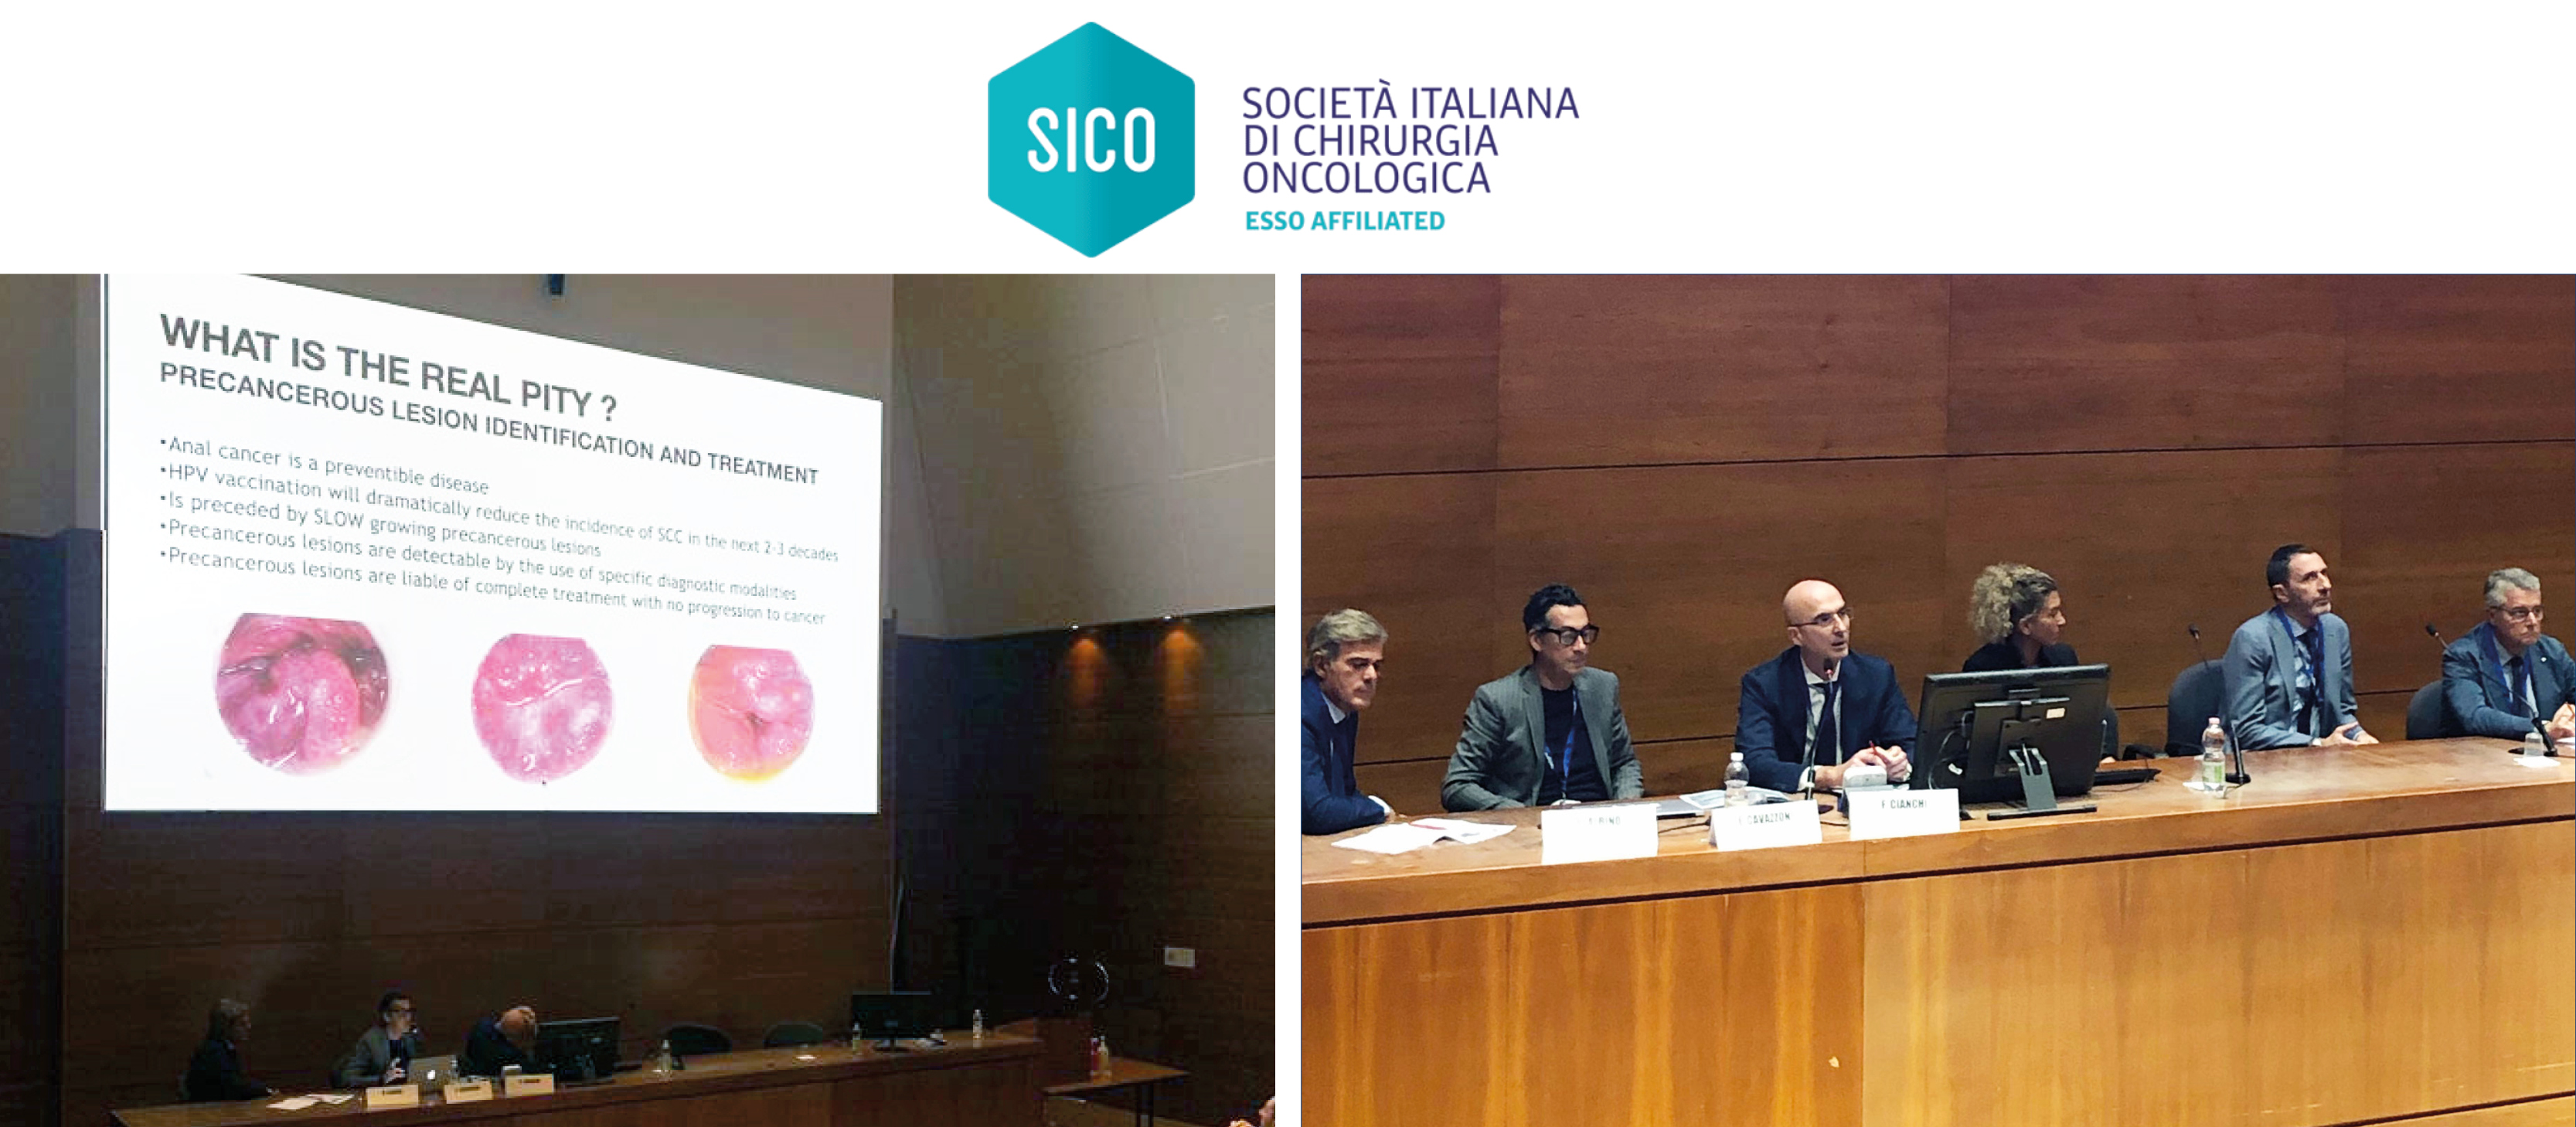 Dal 25 al 27 settembre THD era a Siena per partecipare alla V Conferenza Internazionale di Chirurgia Oncologica.